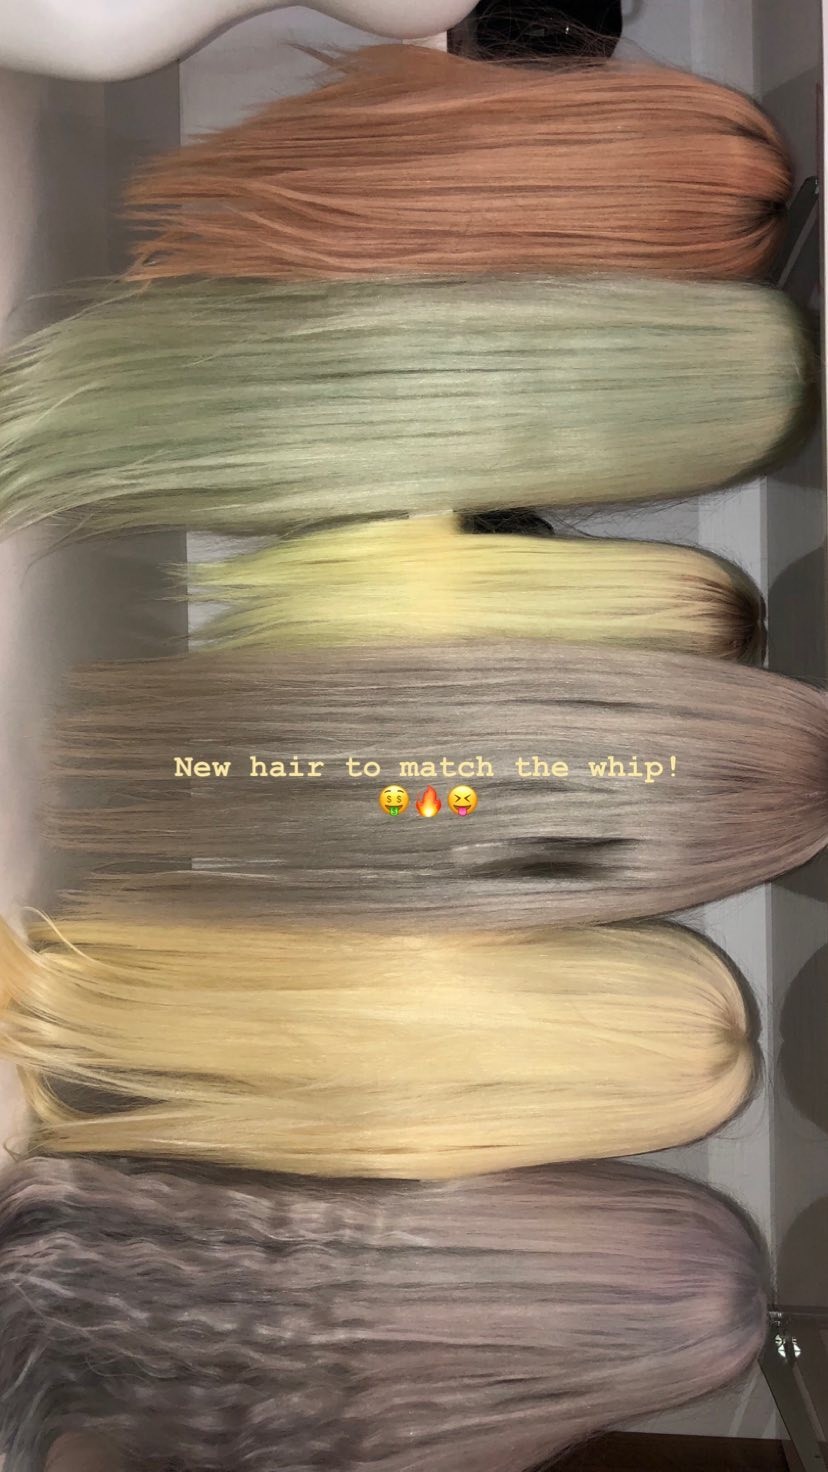 Kim Kardashian mostra coleção de perucas neon (Foto: reprodução/Instagram)